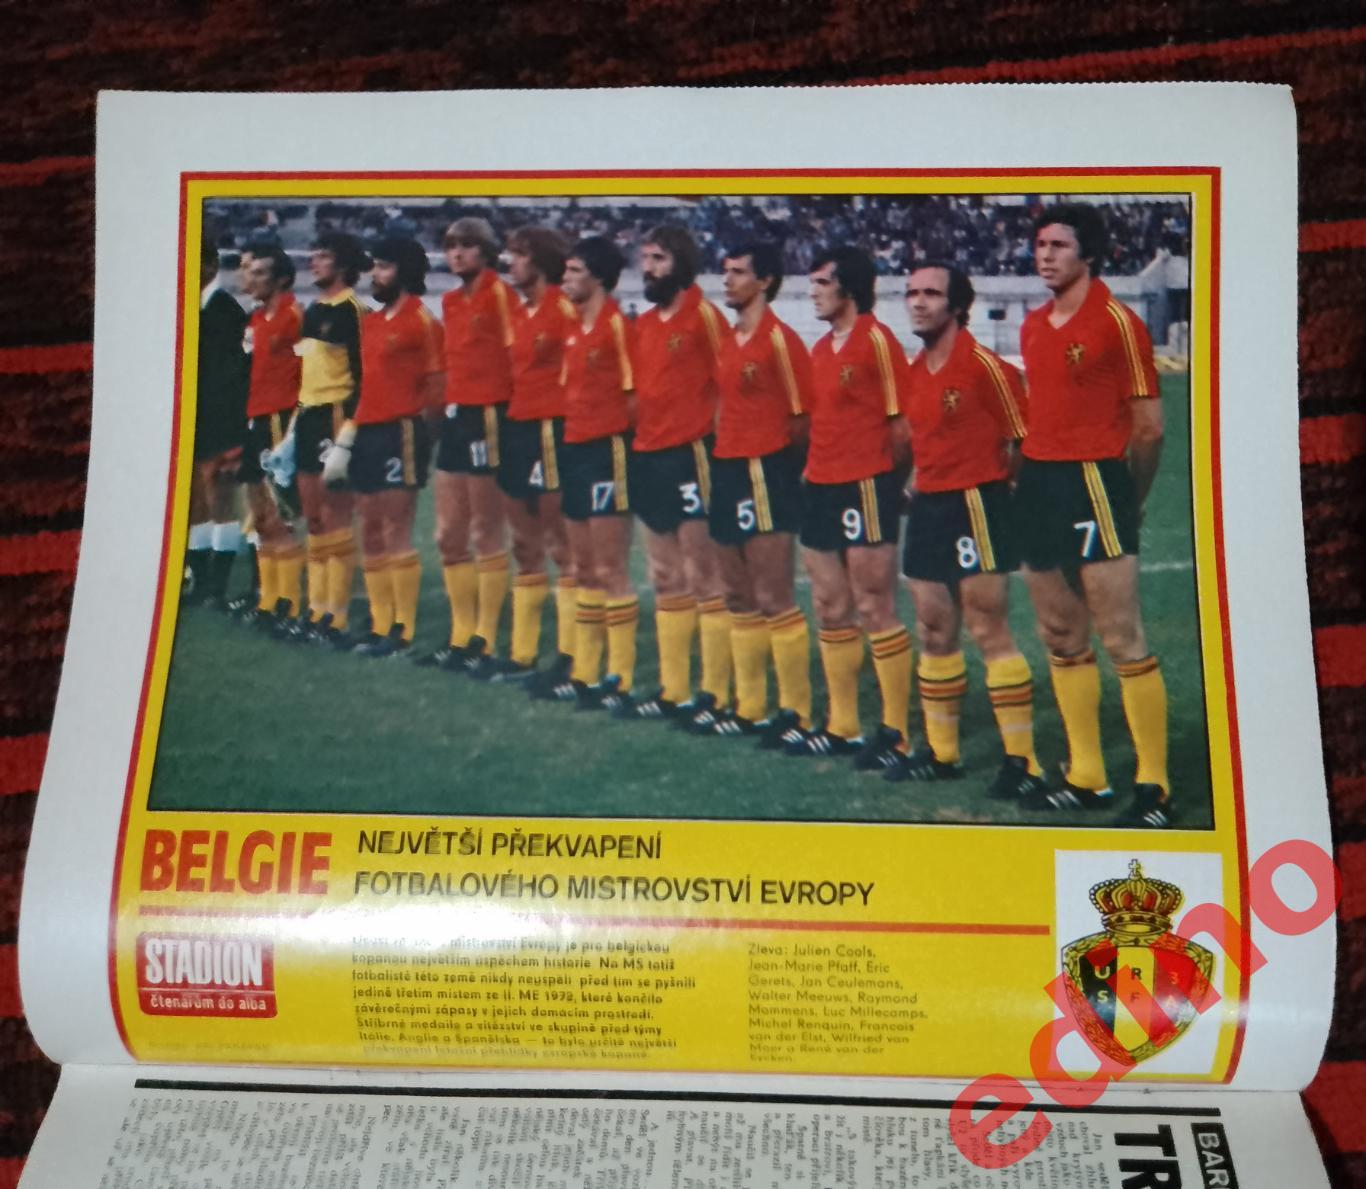 журнал Стадион(stadion) 1980 год Бельгия финалист Евро 80